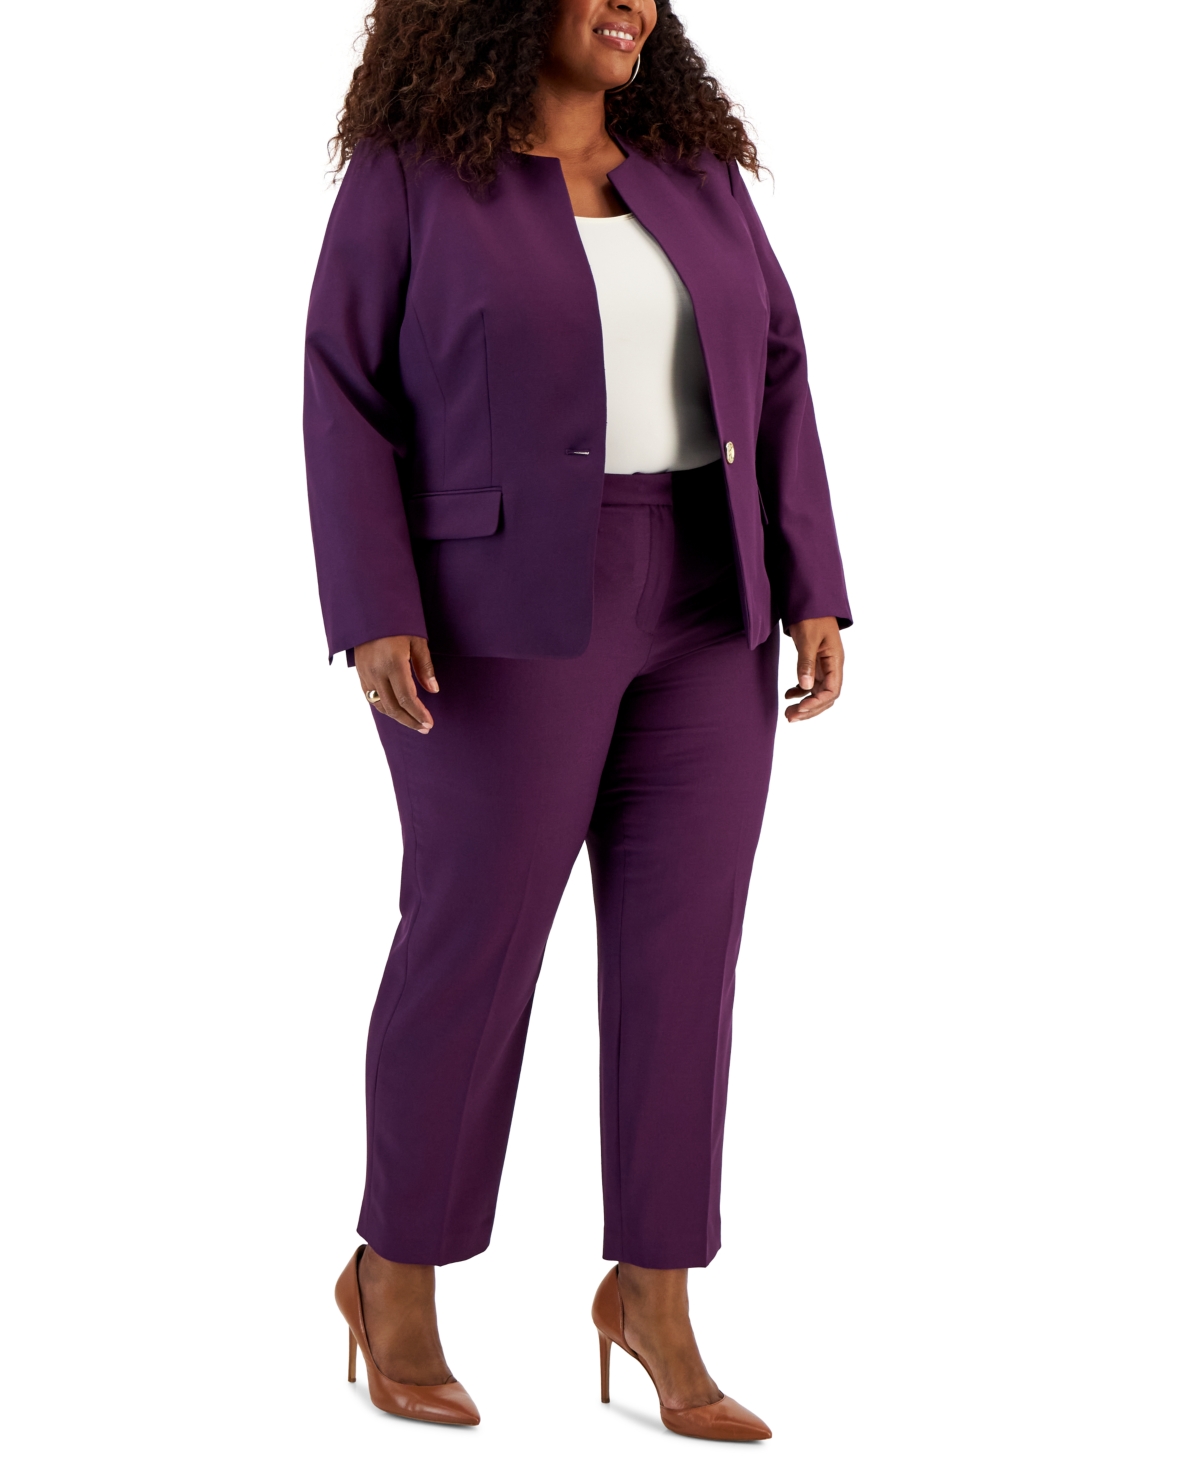 Le Suit Plus Size Crepe Single Button Jacket & Elastic-back Pants In Plum